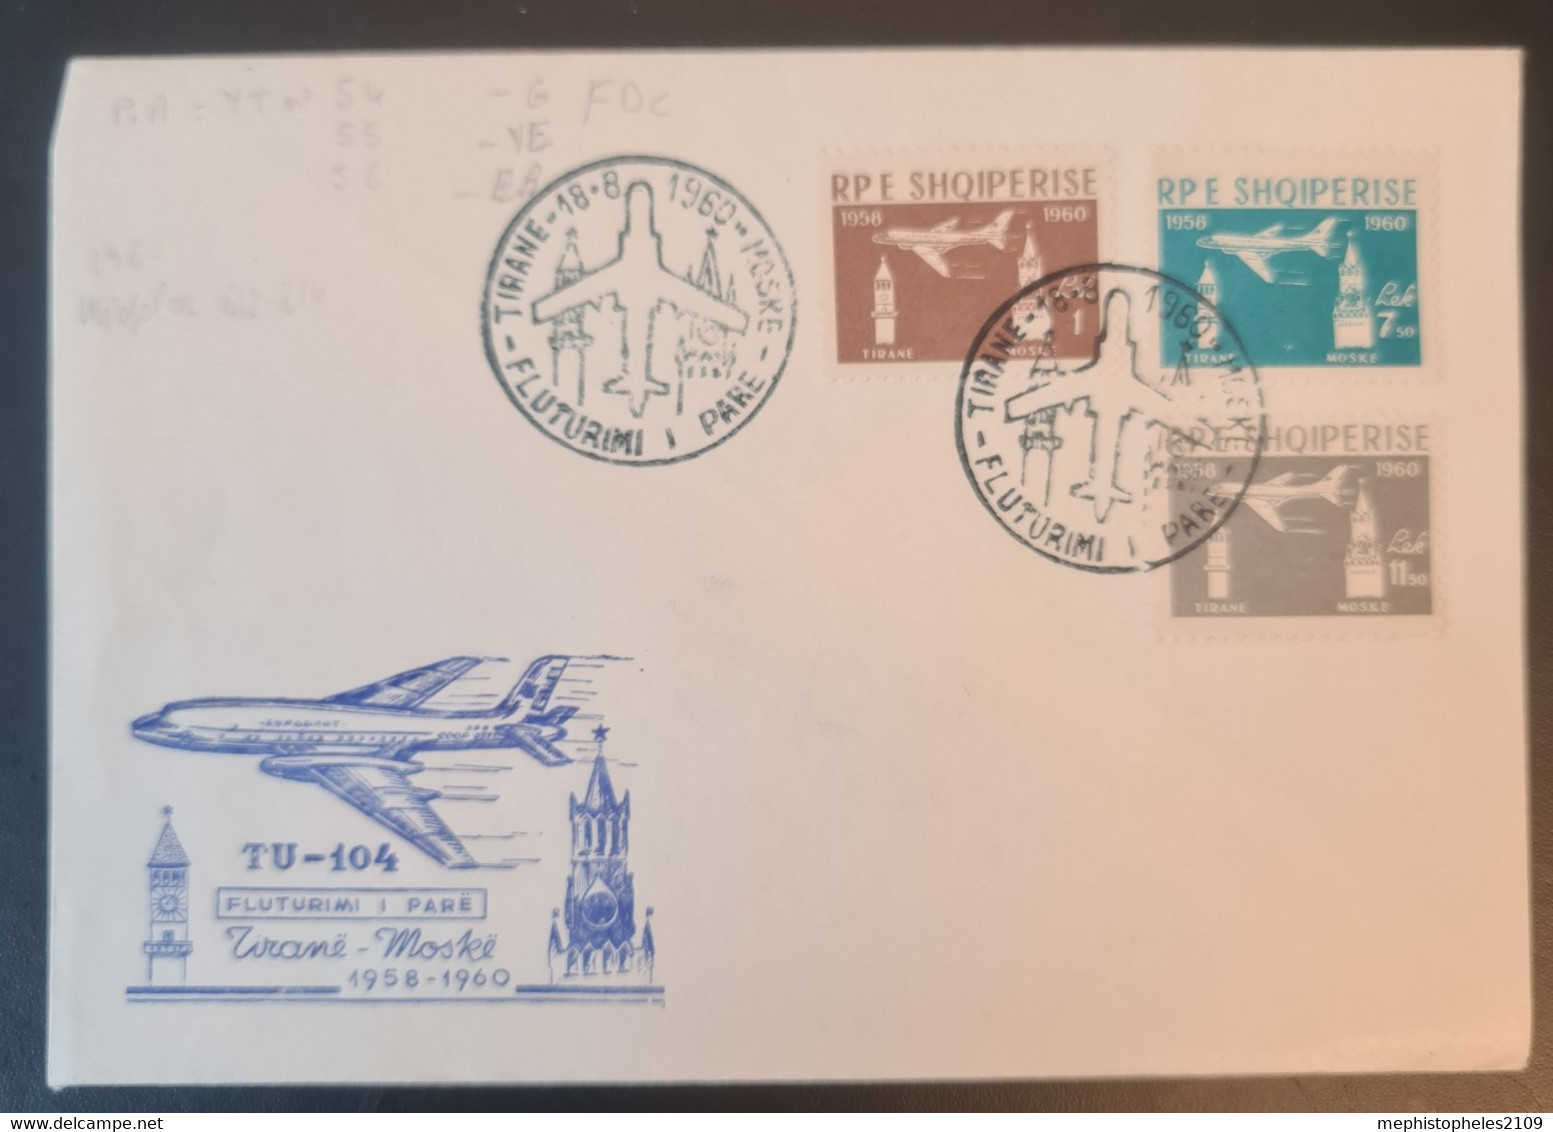 ALBANIA 1960 - Tirana Cancel (FDC) - Mi 612-614 - On Enveloppe - Albania